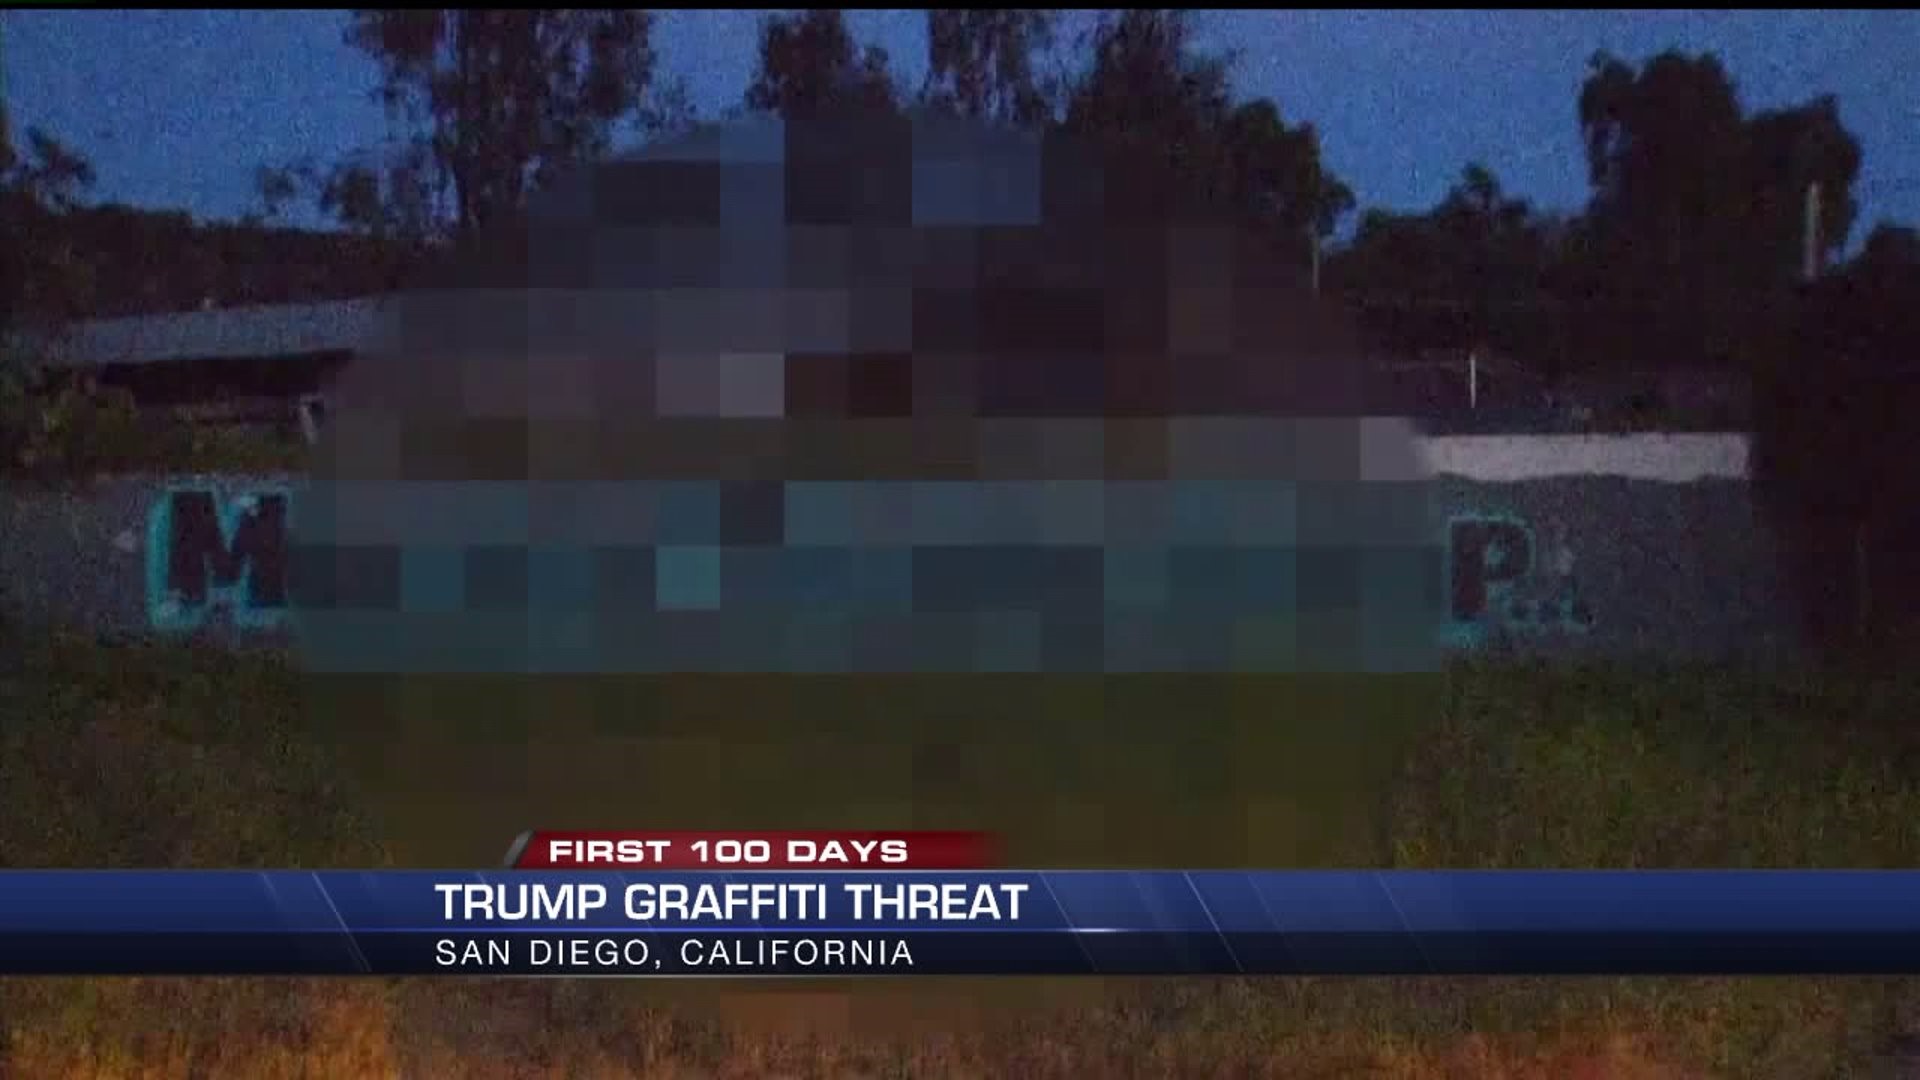 Trump graffiti threat